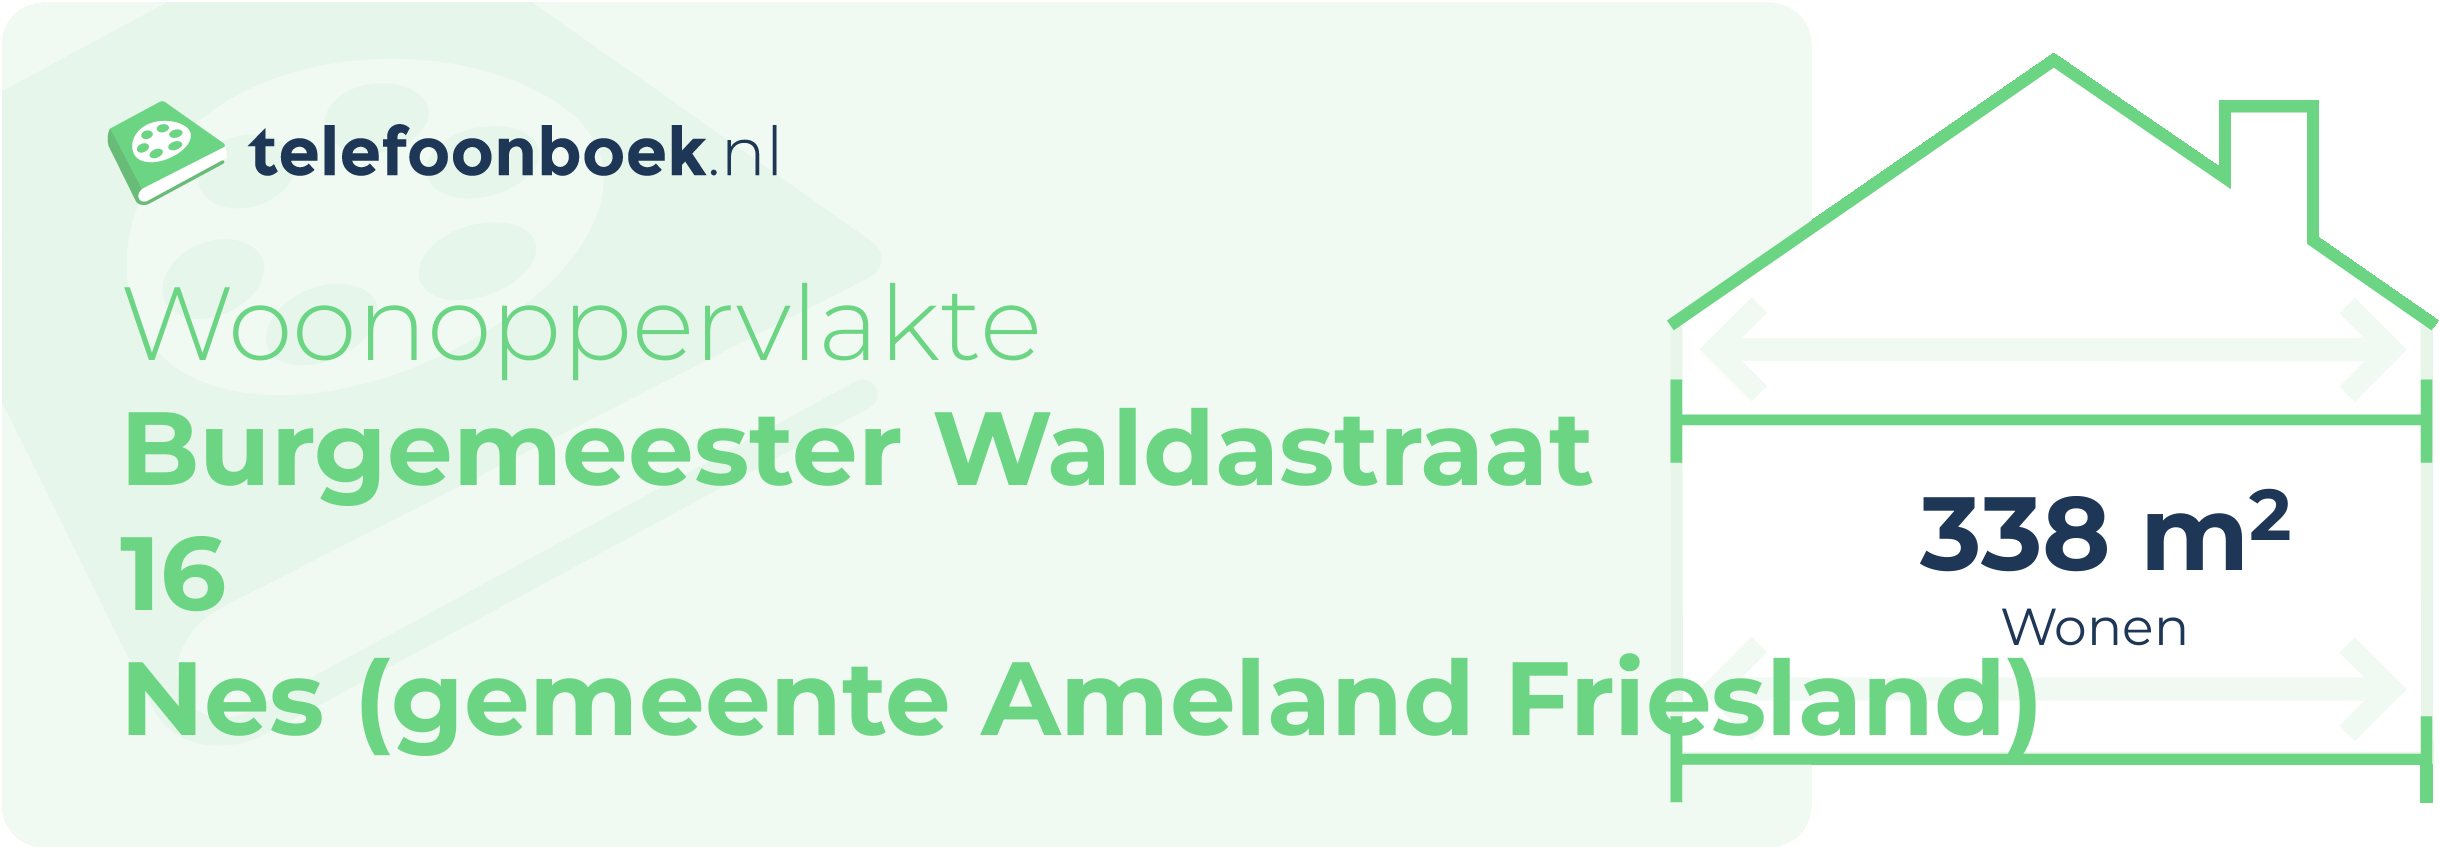 Woonoppervlakte Burgemeester Waldastraat 16 Nes (gemeente Ameland Friesland)